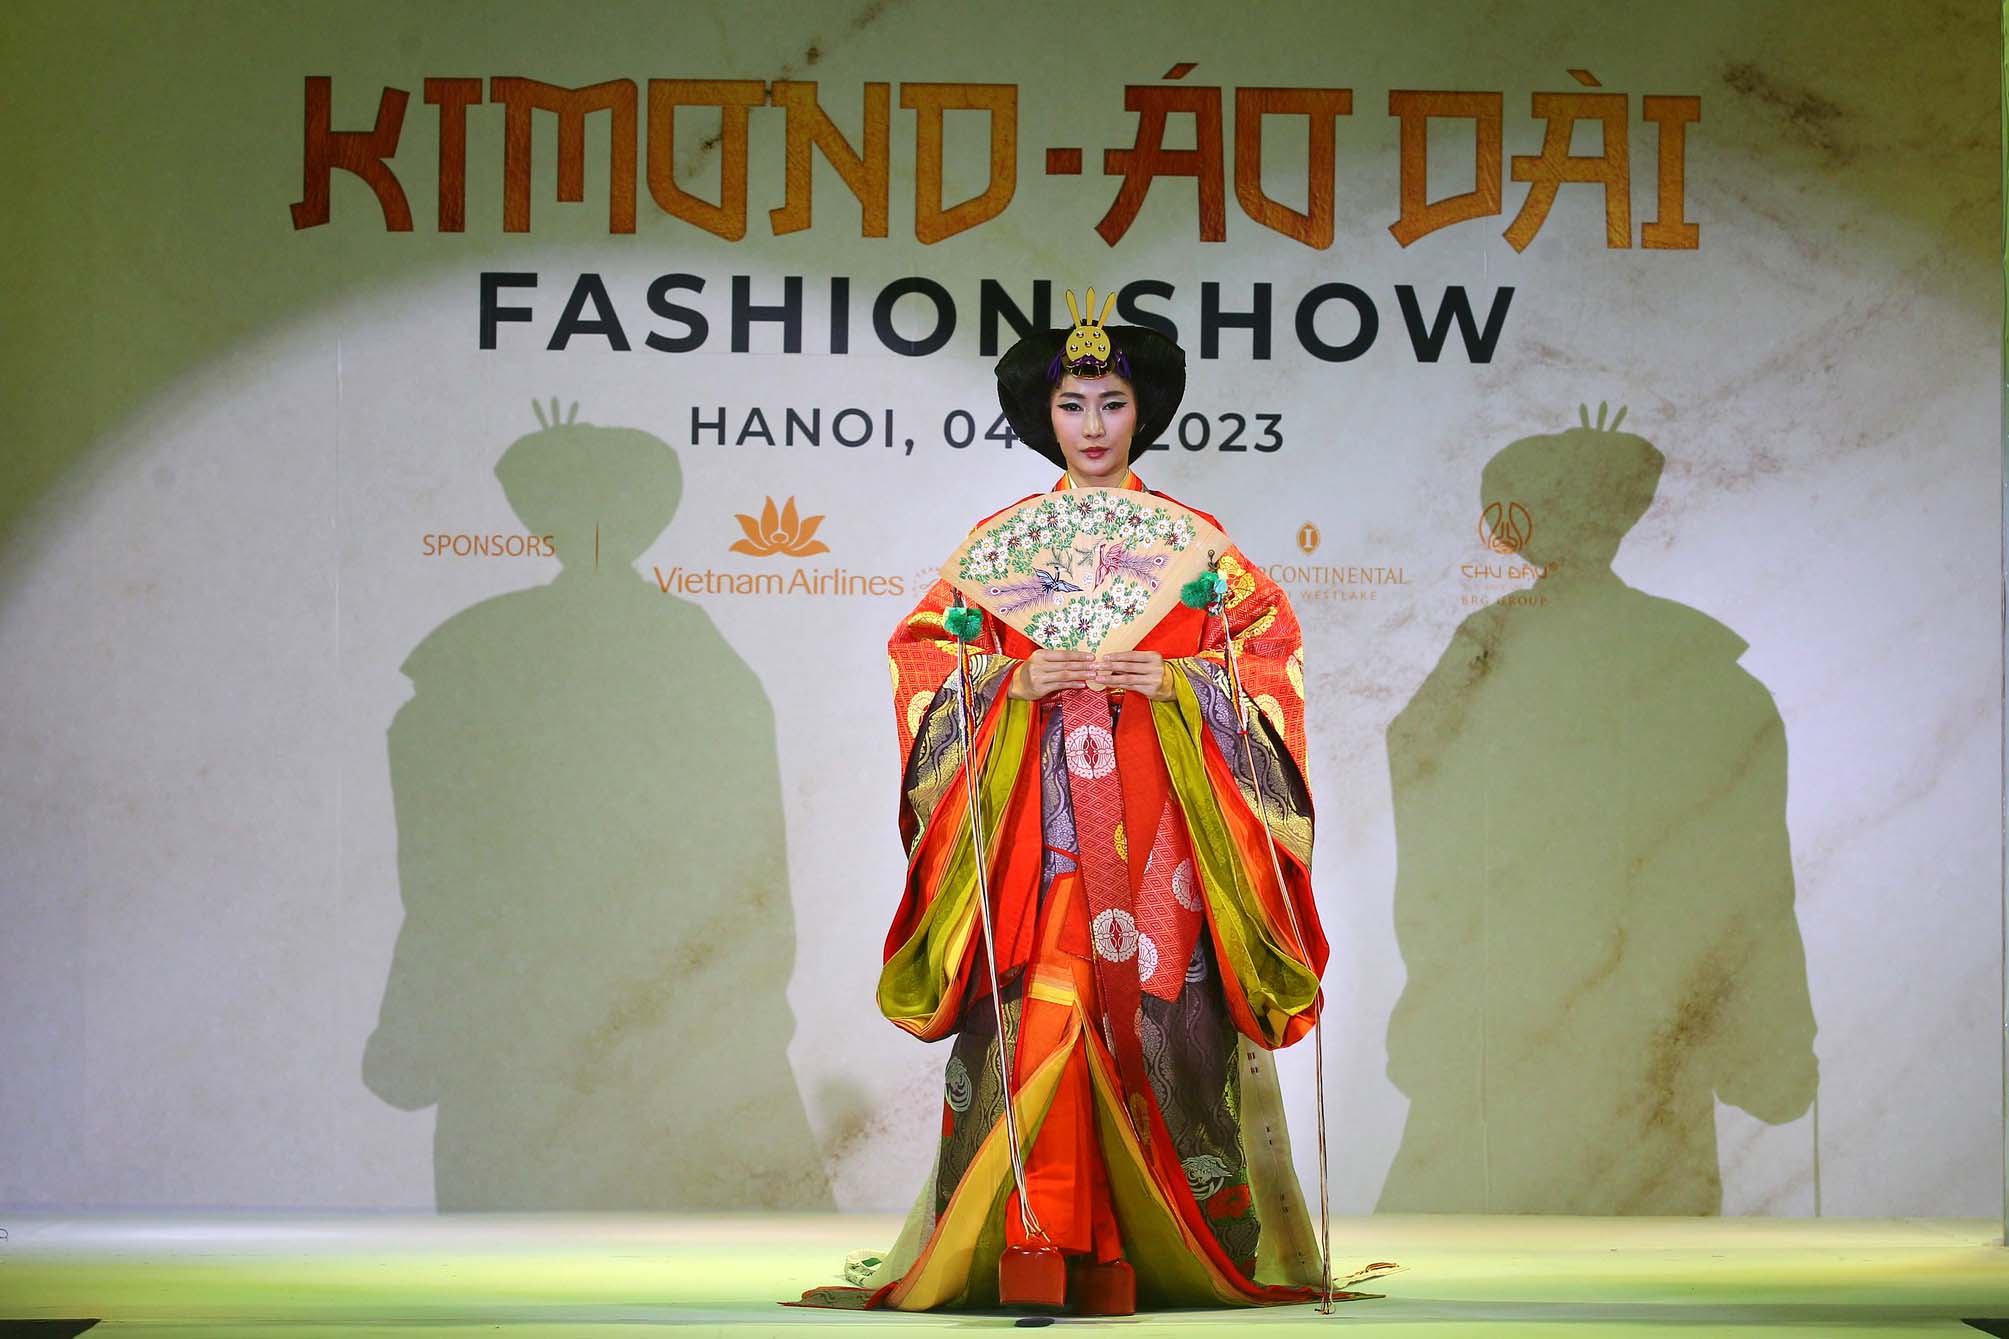 Cả 2 buổi biểu diễn Kimono - Aodai Fashion Show lúc 14 giờ và 19 giờ, ngày 4/3, tại Khách sạn InterContinental Hanoi Westlake đều không còn một chỗ trống. Giới mộ điệu thời trang không ngớt lời cảm thán khi được chiêm ngưỡng những bộ sưu tập kimono truyền thống và cách tân tuyệt đẹp cùng những bộ áo dài được may từ các chất liệu của kimono xưa của nhà thiết kế thời trang tài ba Kobayashi Eiko, cũng là nhà sáng lập tổ chức phi lợi nhuận Be - Japon. 